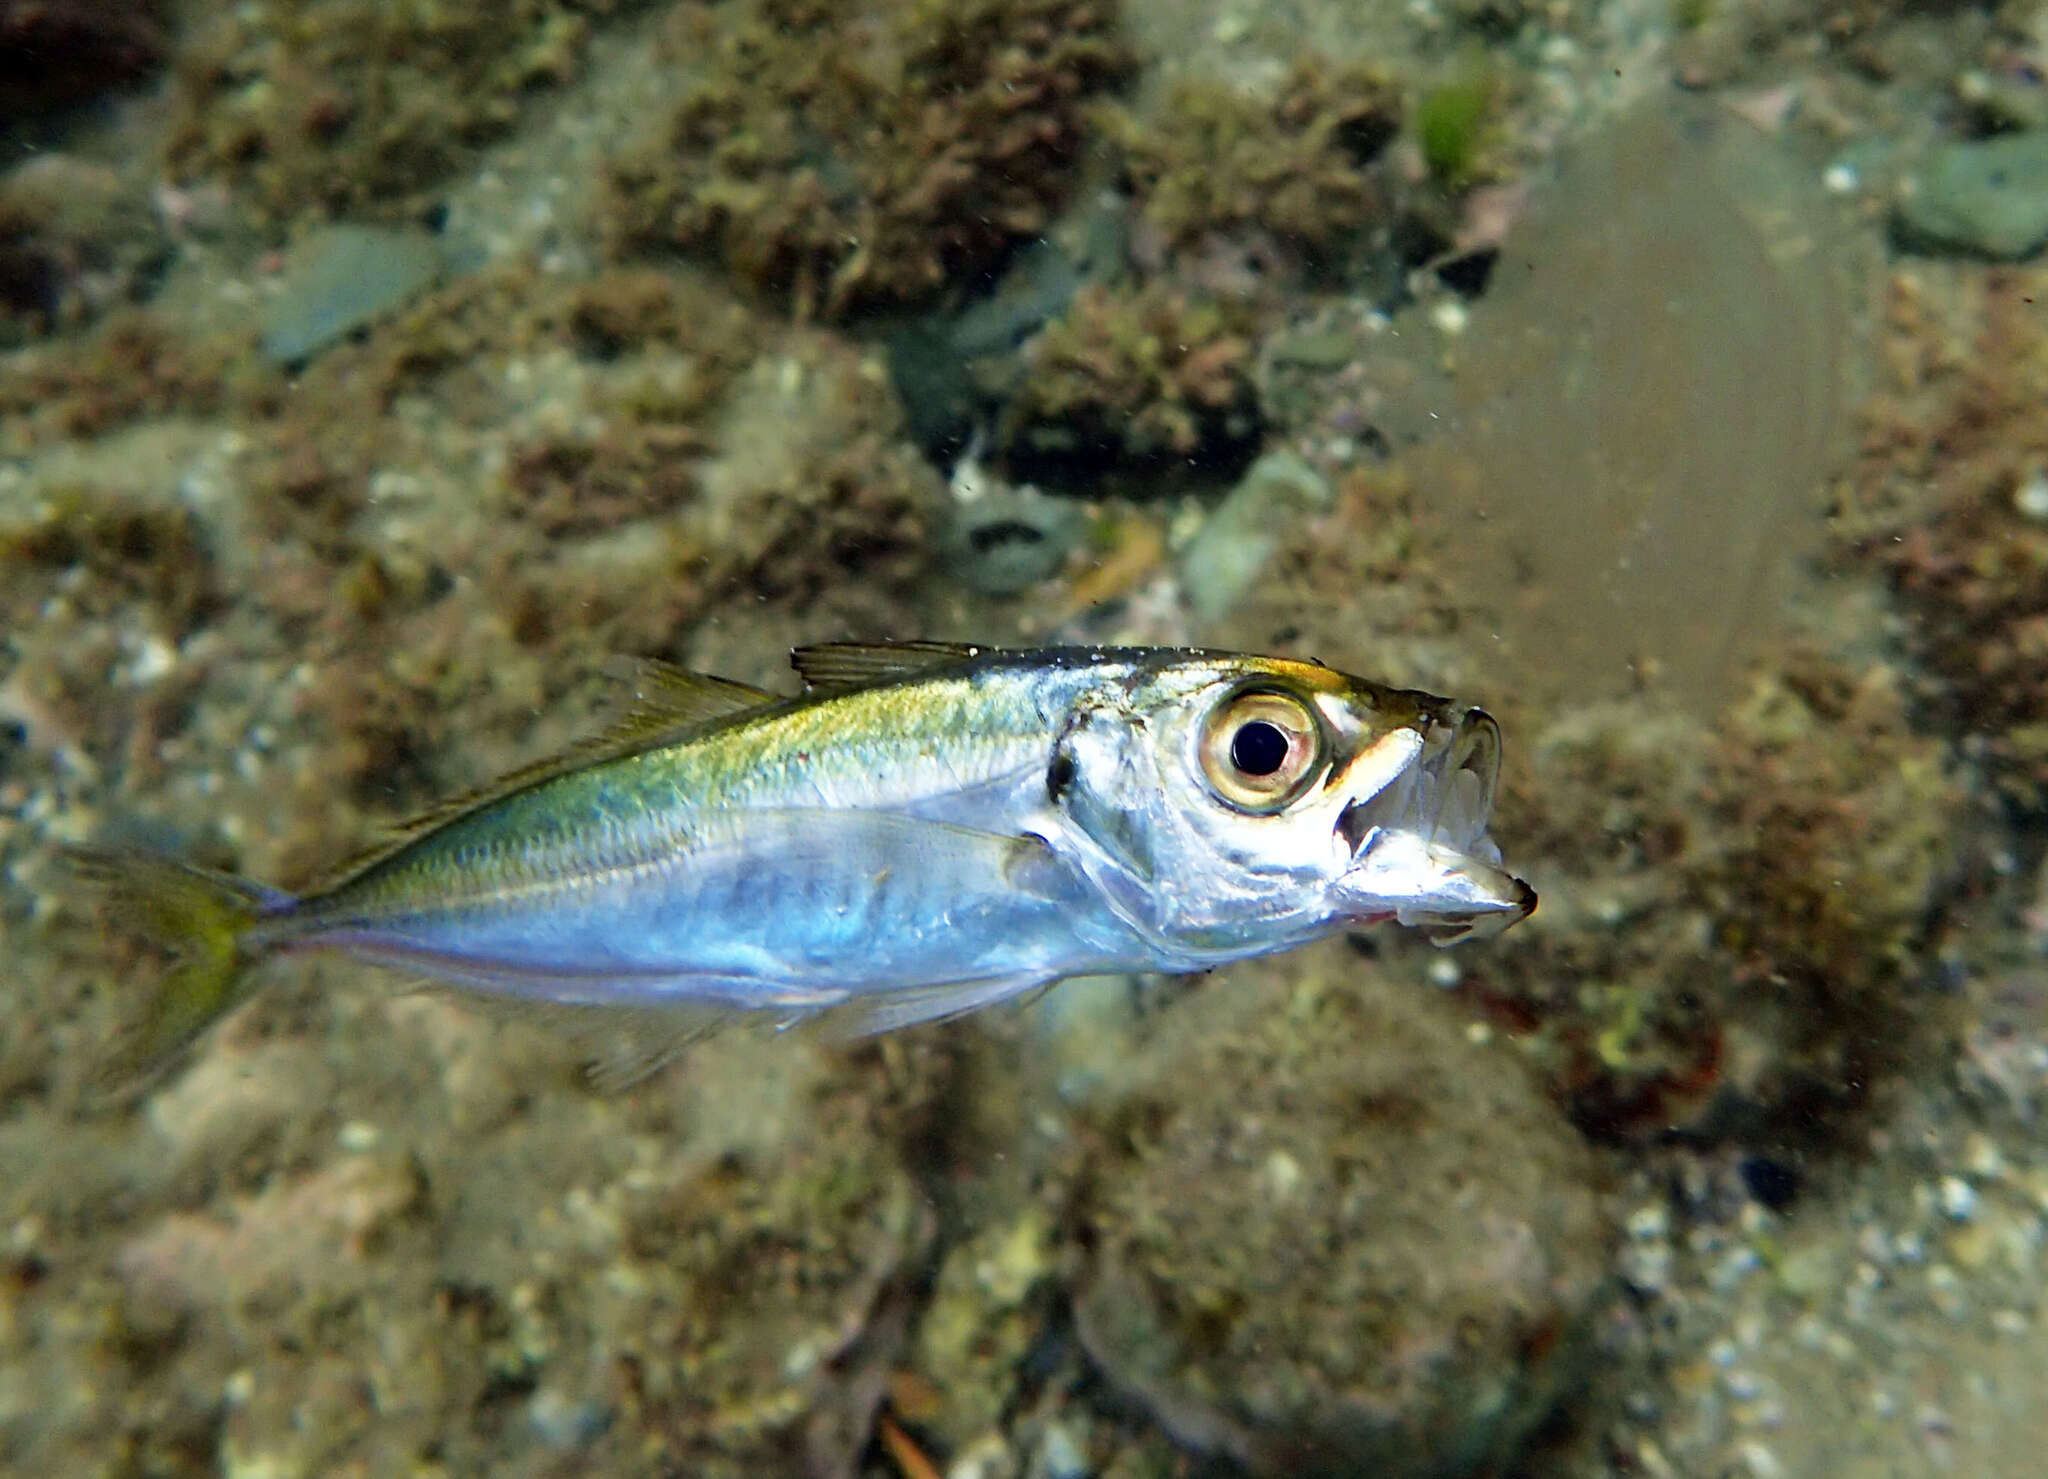 Image of Japanese horse mackerel